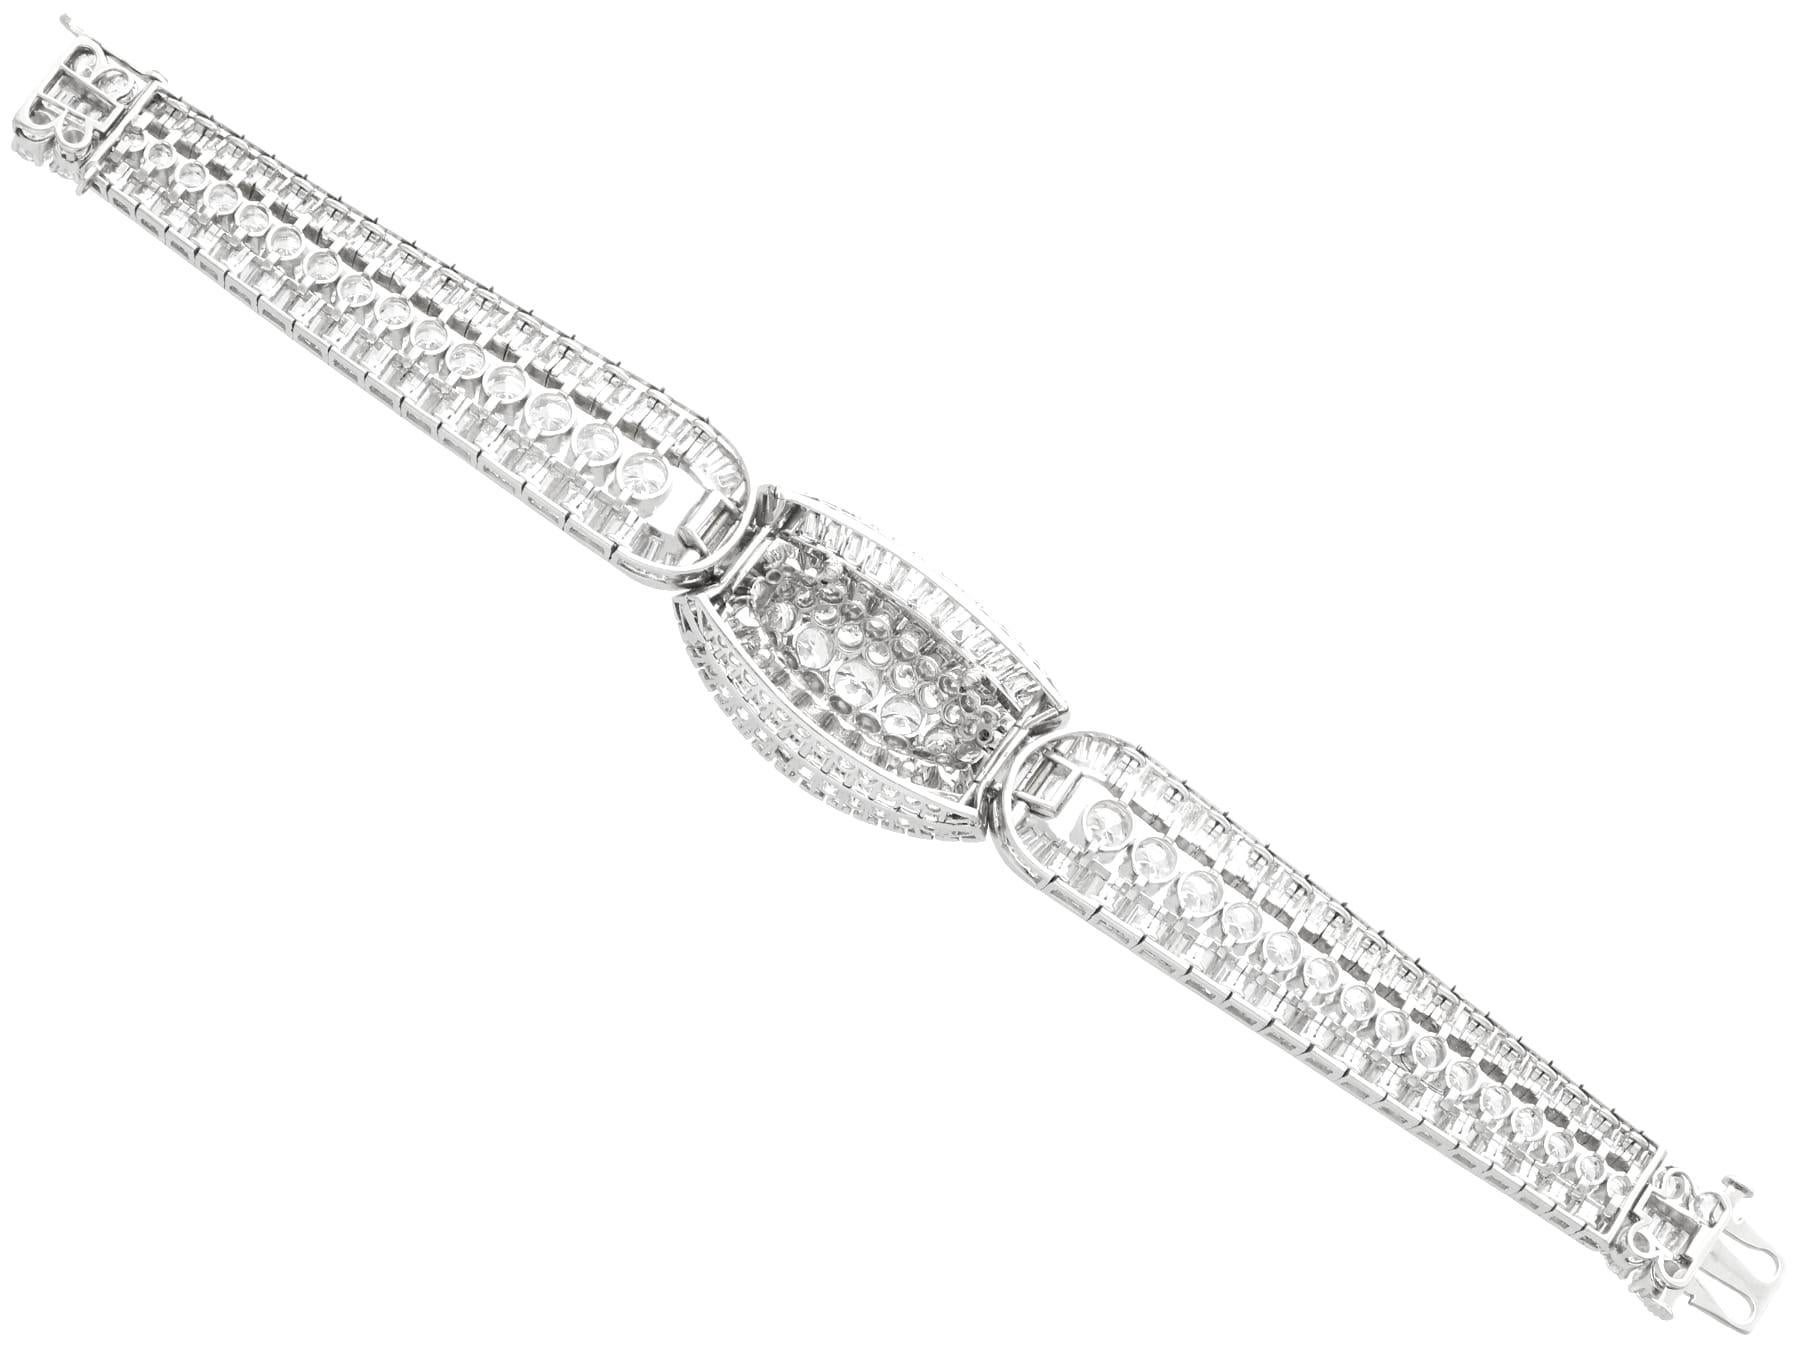 Antique 31.54 Carat Diamond and Platinum Bracelet - Circa 1925 For Sale 2